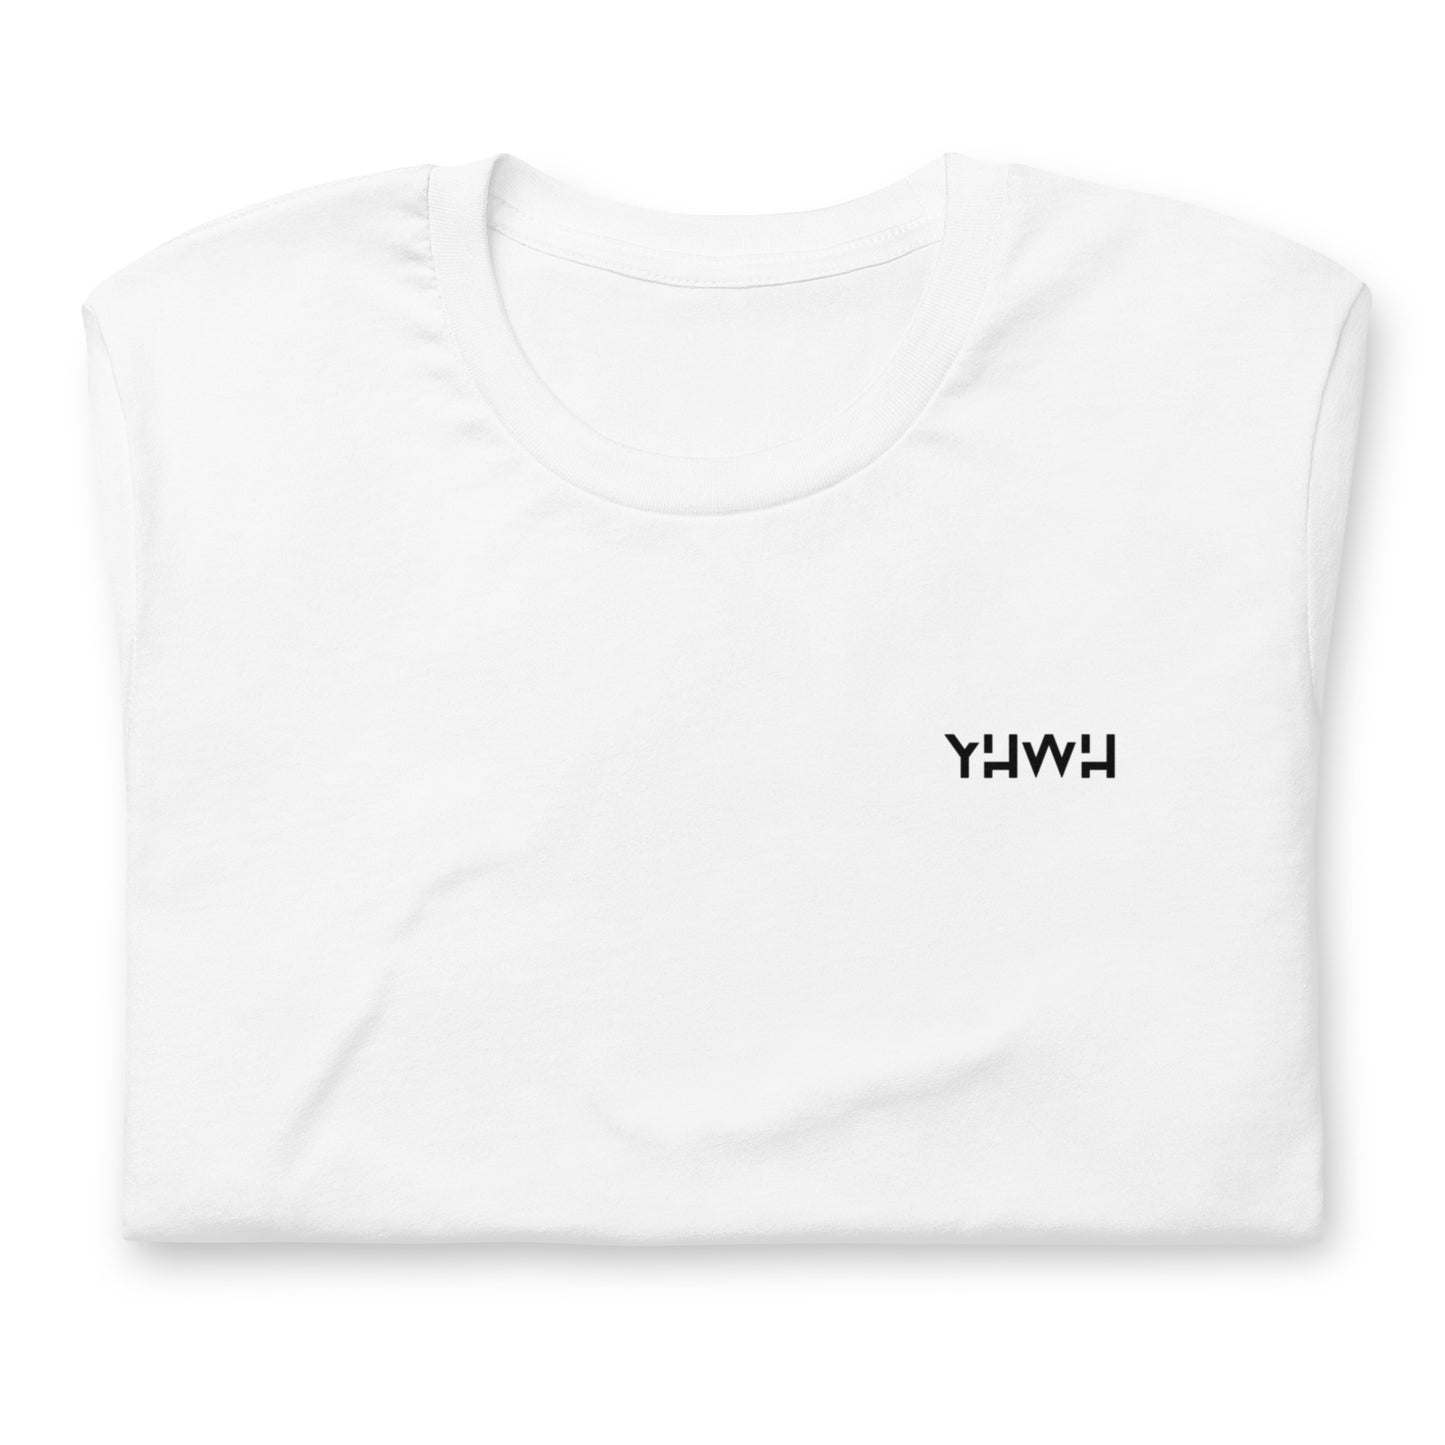 T-shirt blanc 100 % coton unisexe brodé YHWH